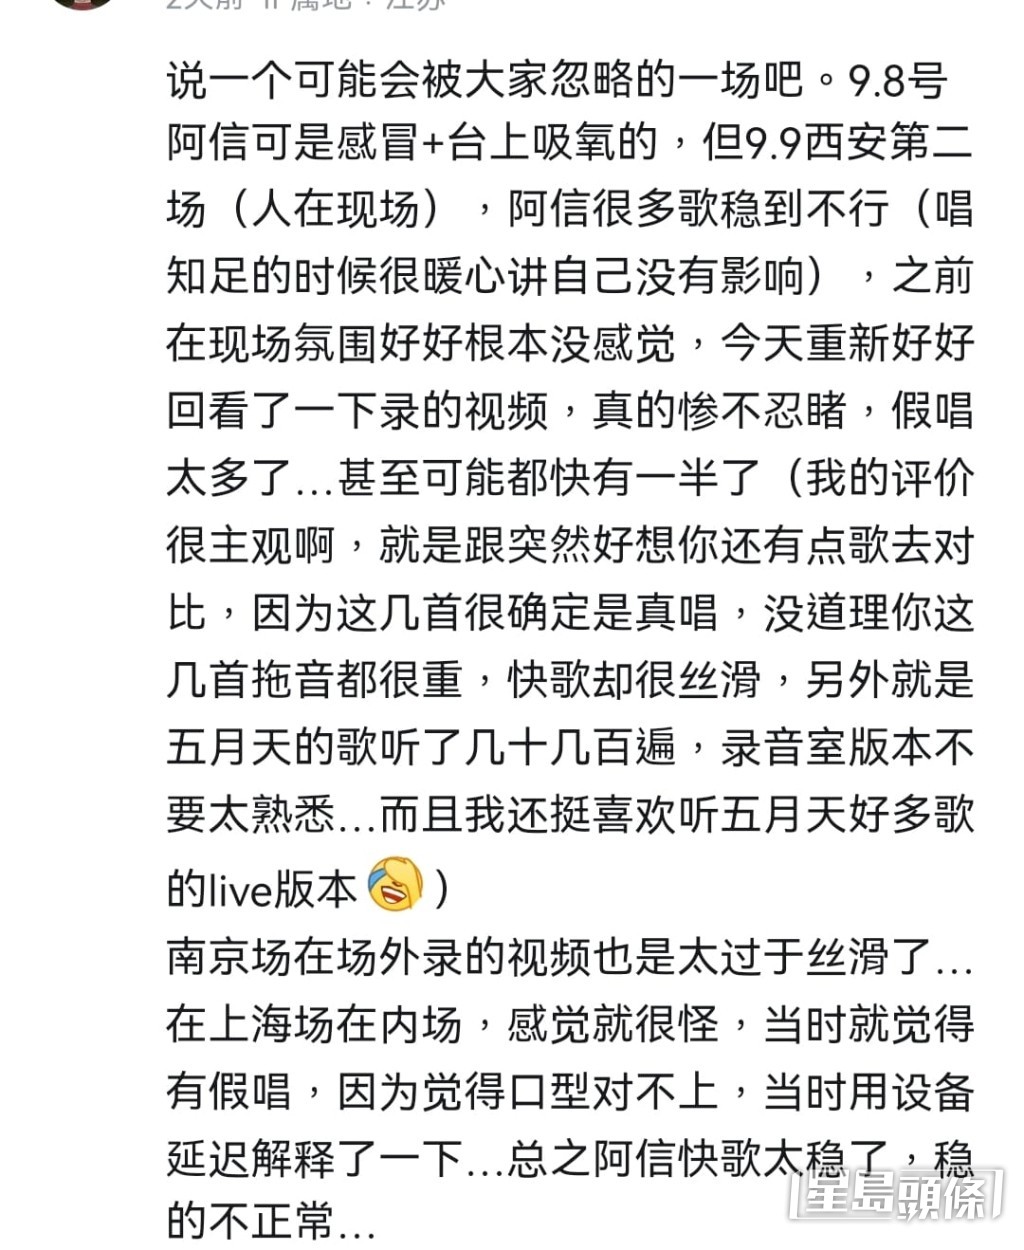 上海場歌迷亦現身表示阿信唱快歌「穩得不正常」、「口型對不上」。